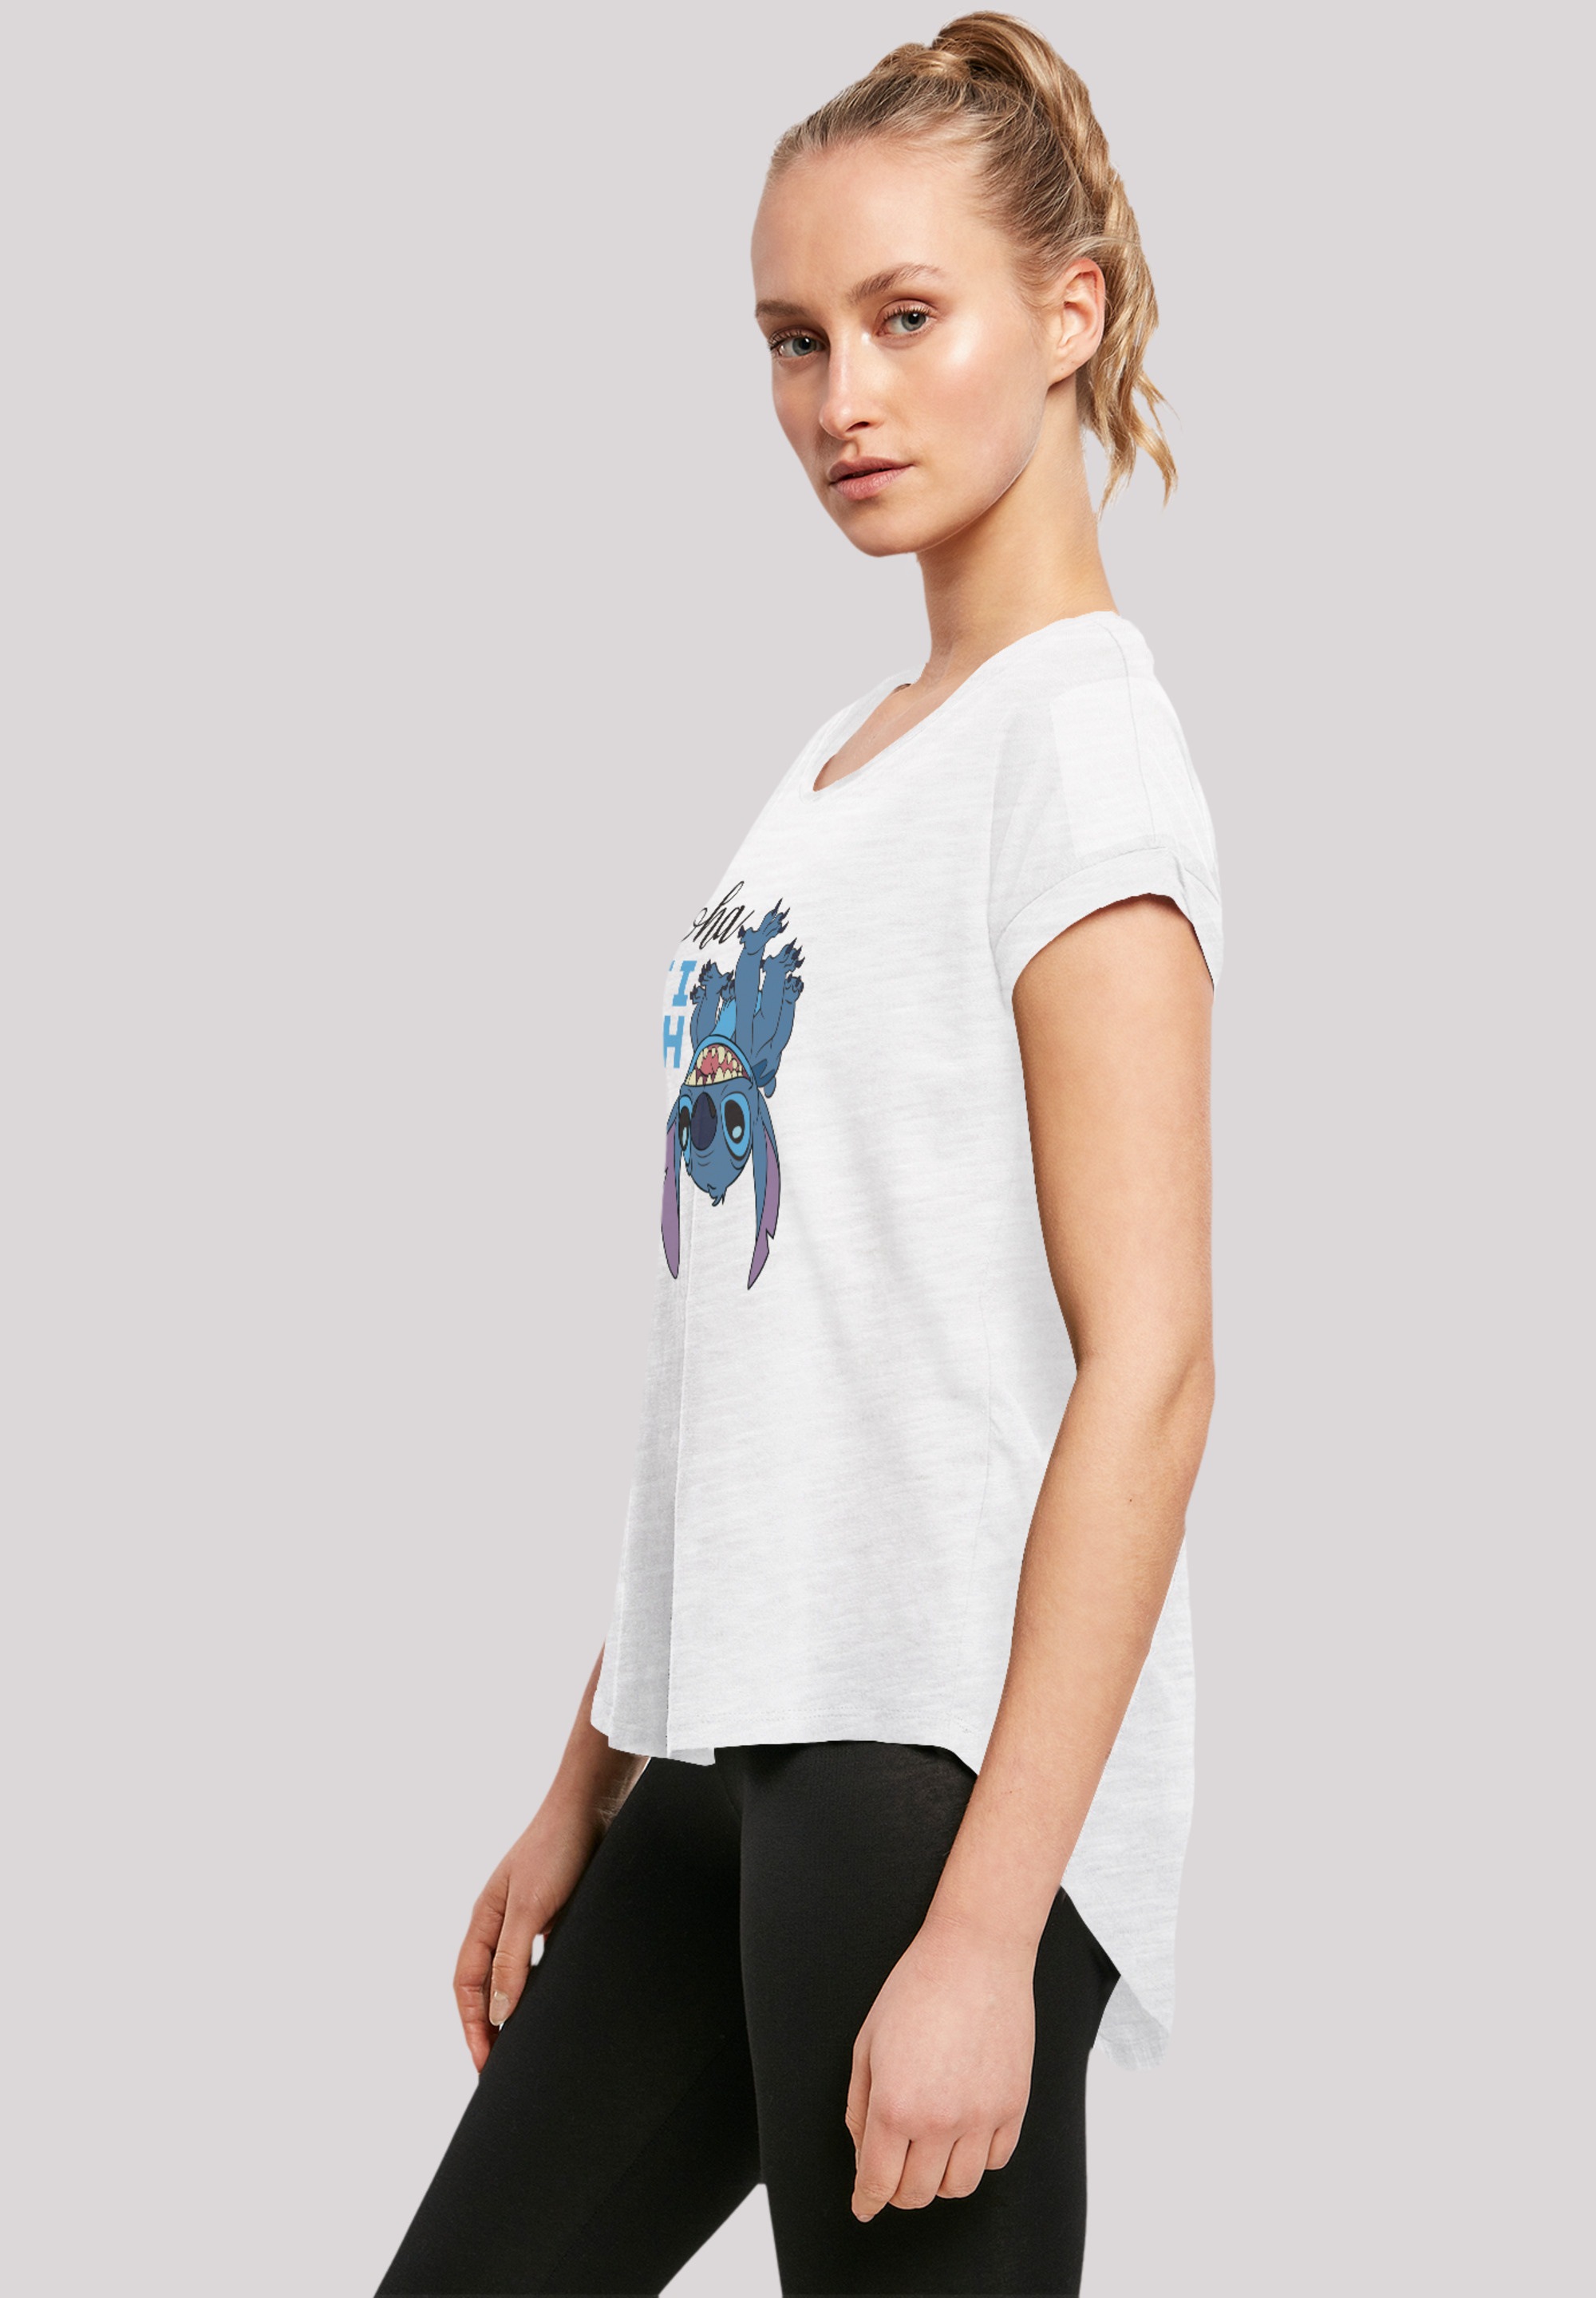 Lilo Qualität online & F4NT4STIC BAUR Head«, On Stitch Premium »Disney T-Shirt bestellen The |